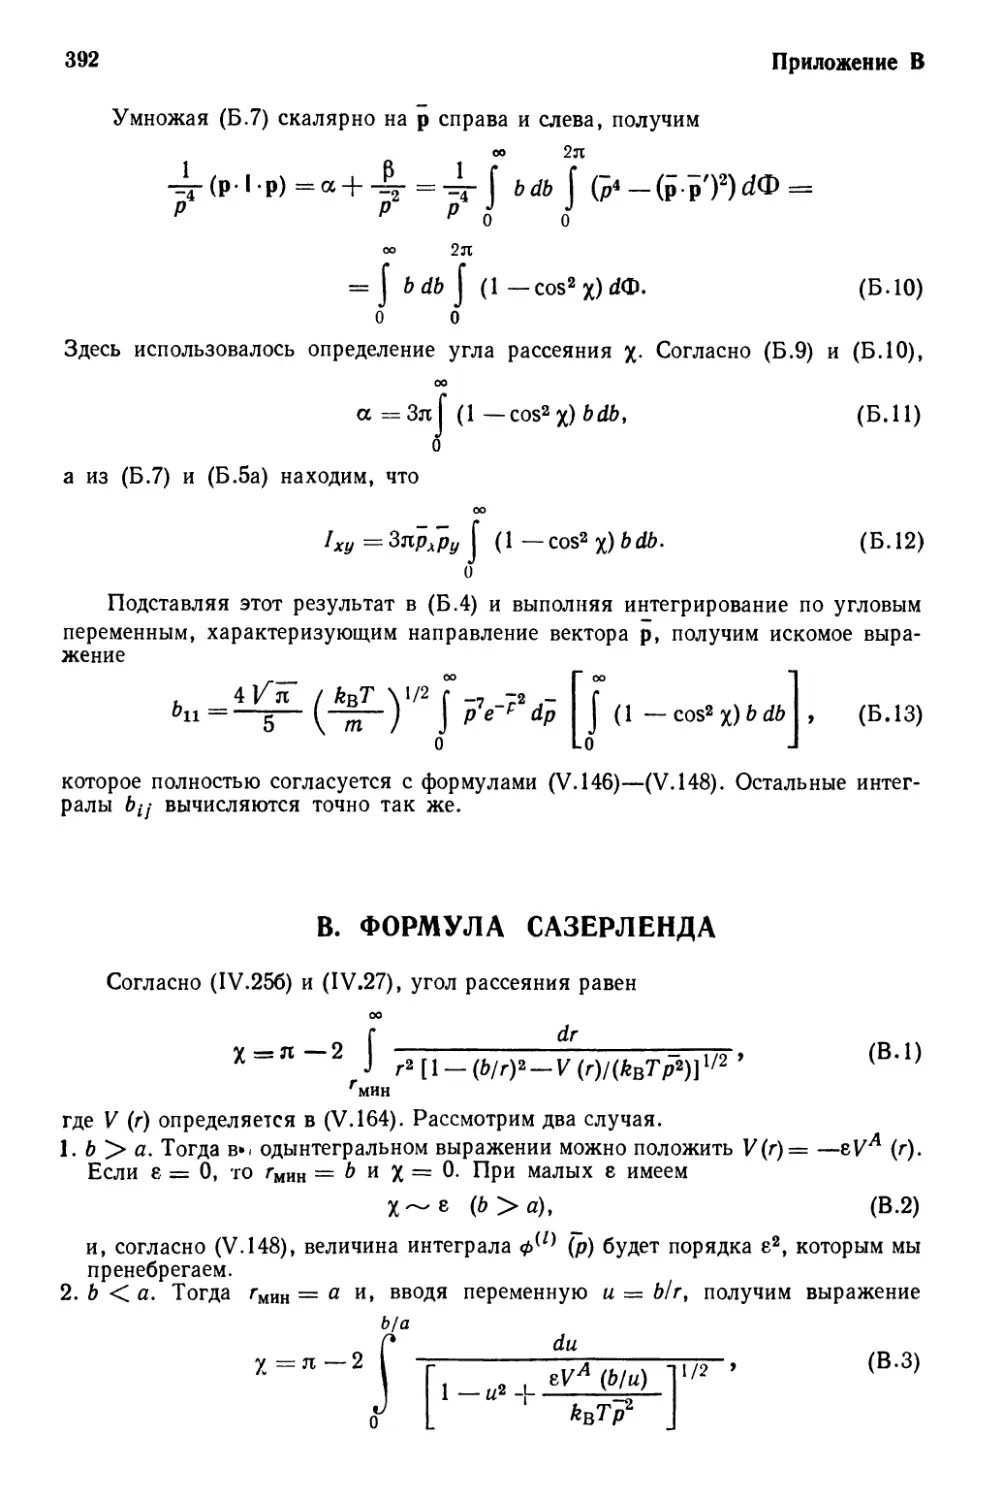 В. Формула Сазерленда